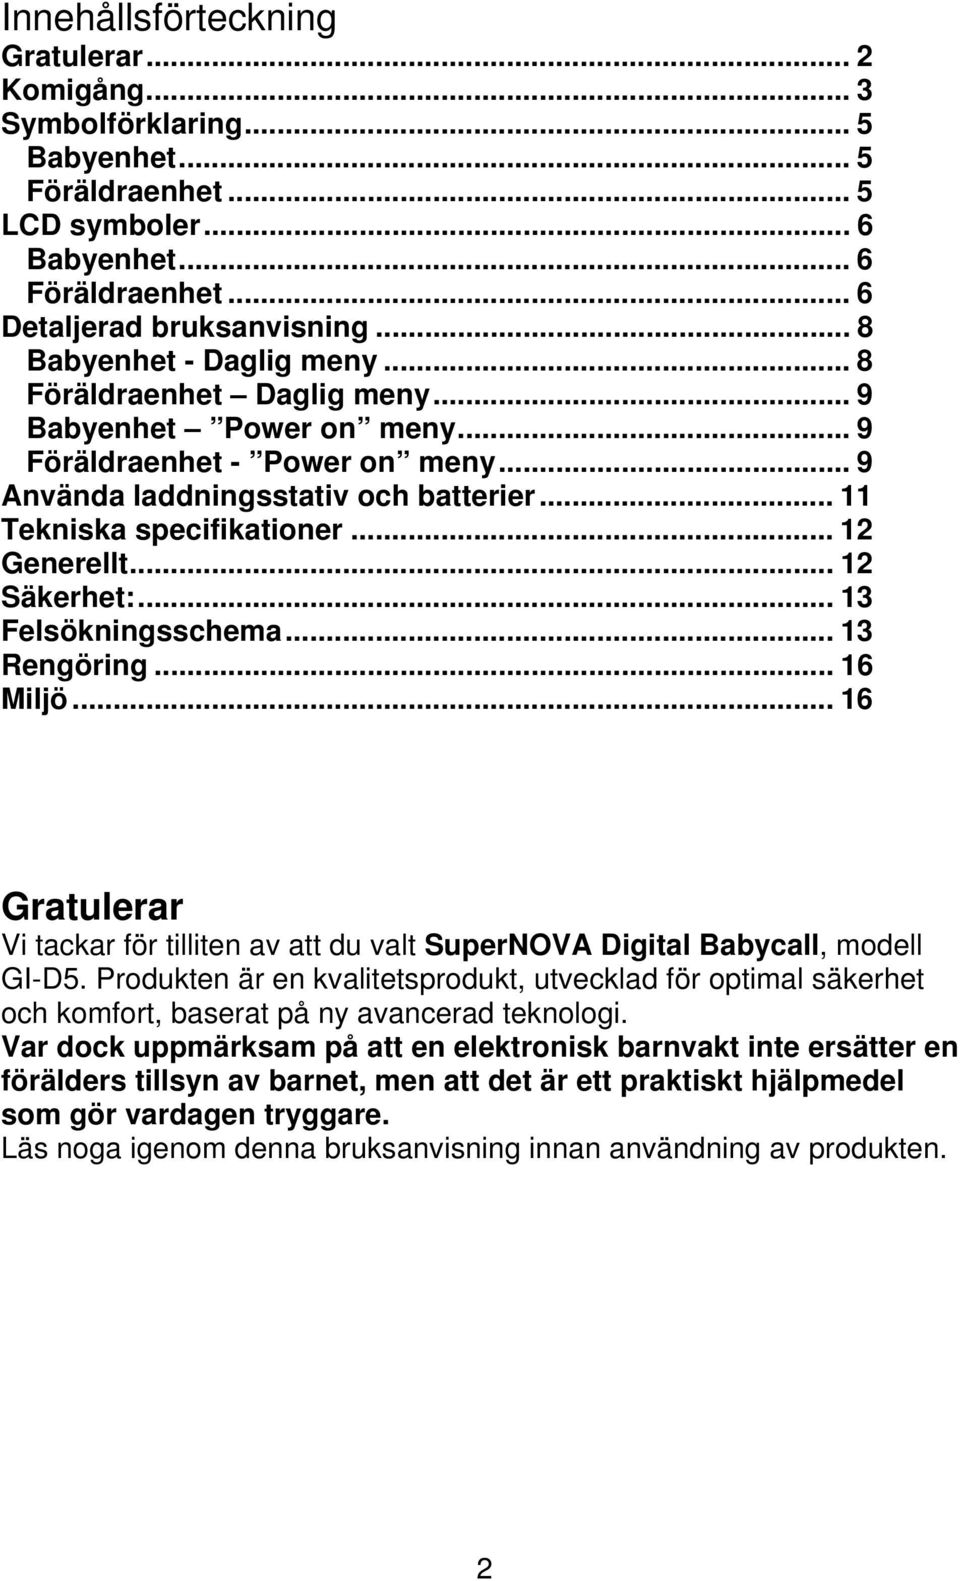 .. 12 Generellt... 12 Säkerhet:... 13 Felsökningsschema... 13 Rengöring... 16 Miljö... 16 Gratulerar Vi tackar för tilliten av att du valt SuperNOVA Digital Babycall, modell GI-D5.